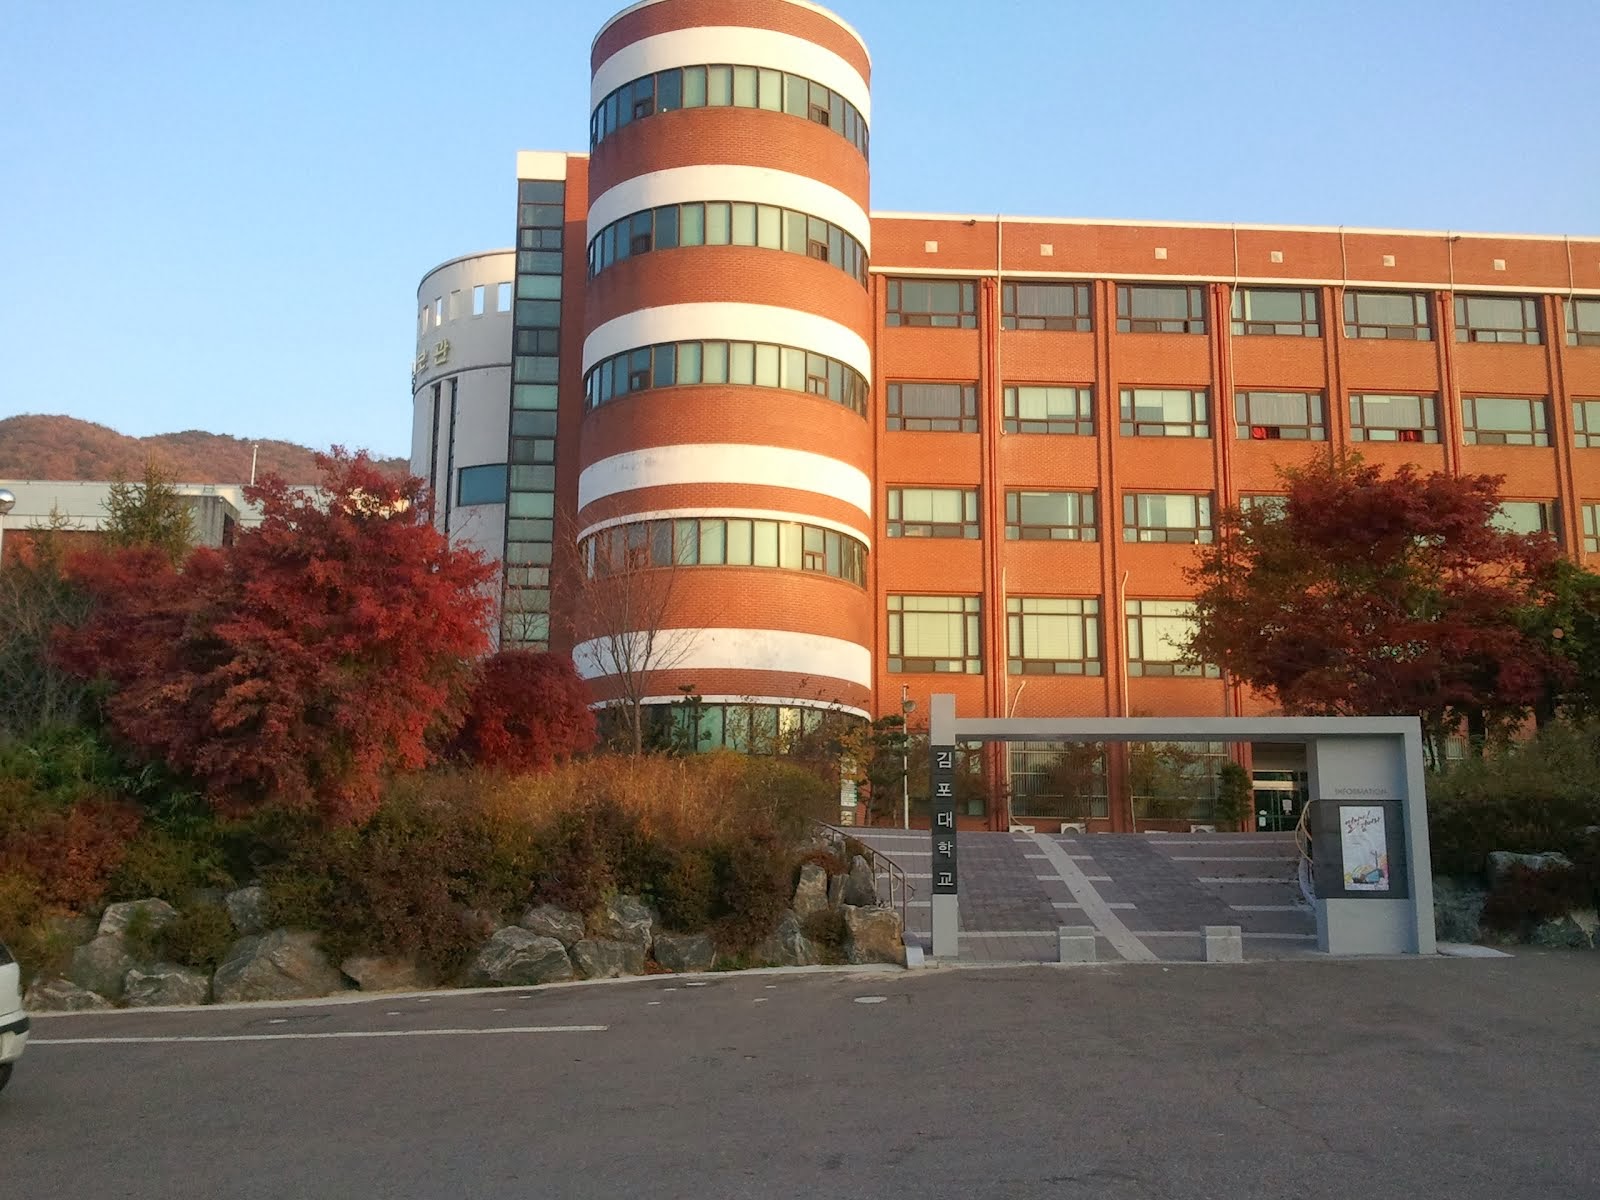 Kimpo College